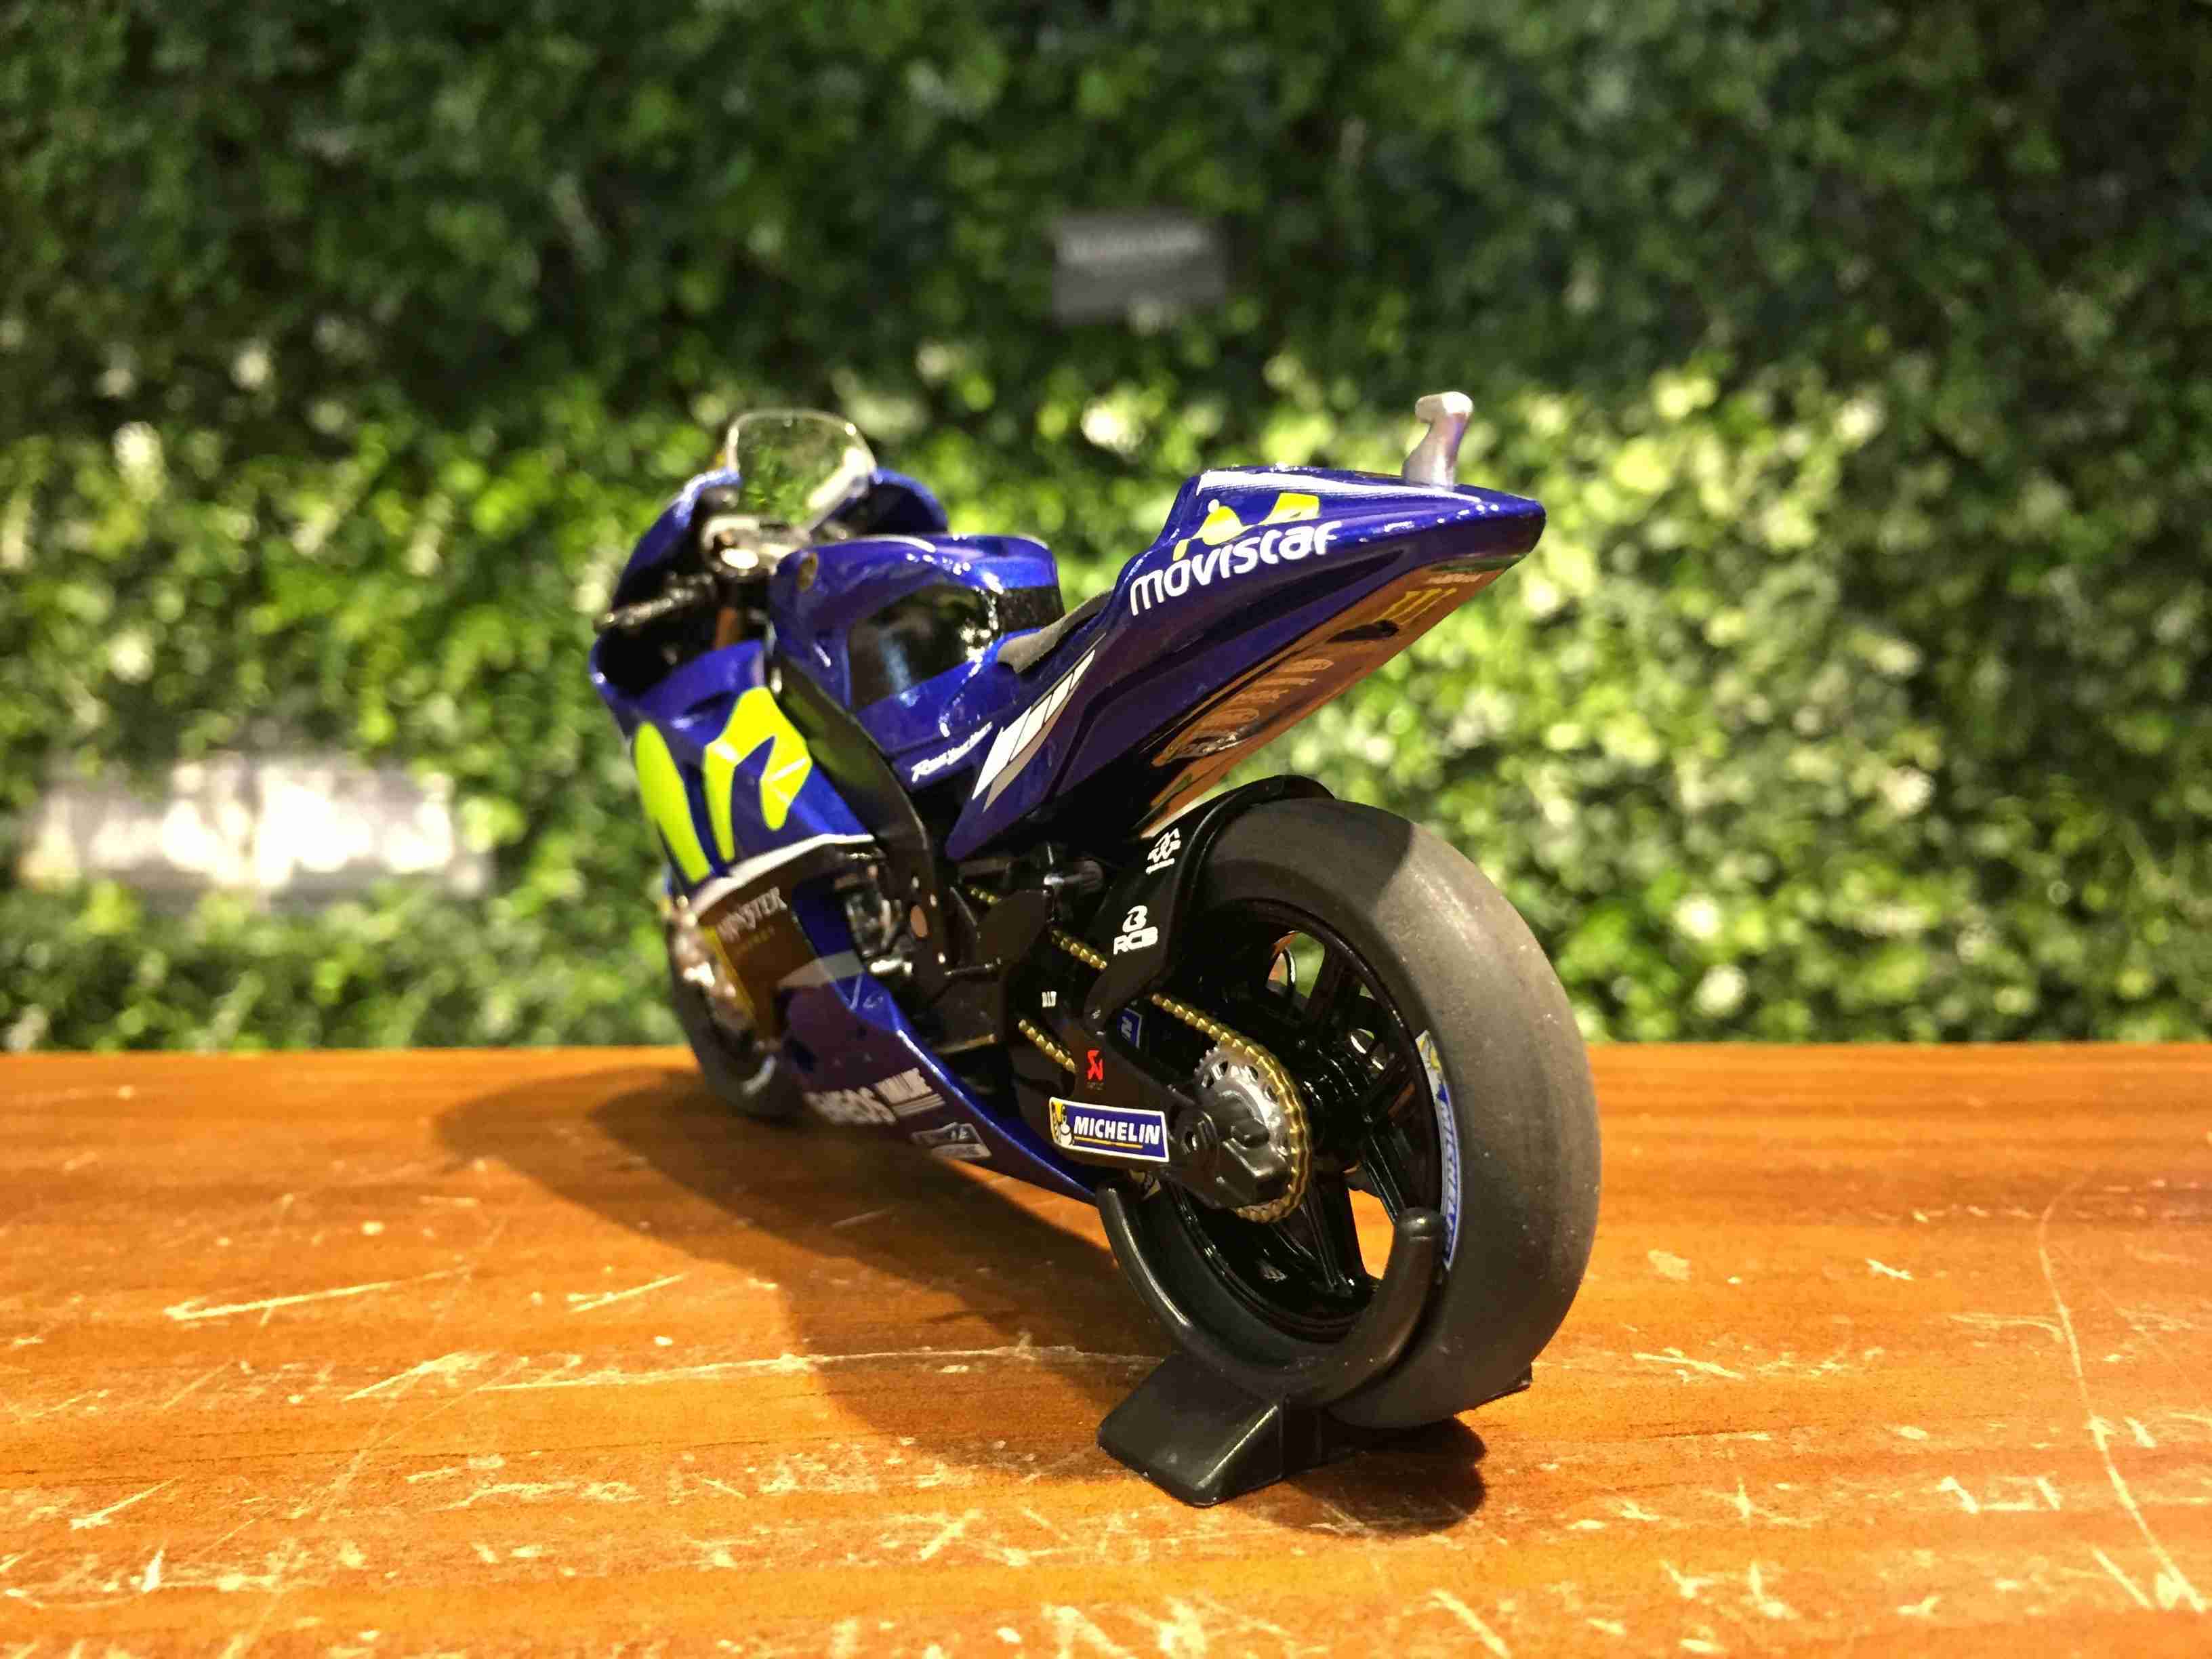 1/18 Minichamps Yamaha YZR-M1 V.Rossi MotoGP 182173046【MGM】